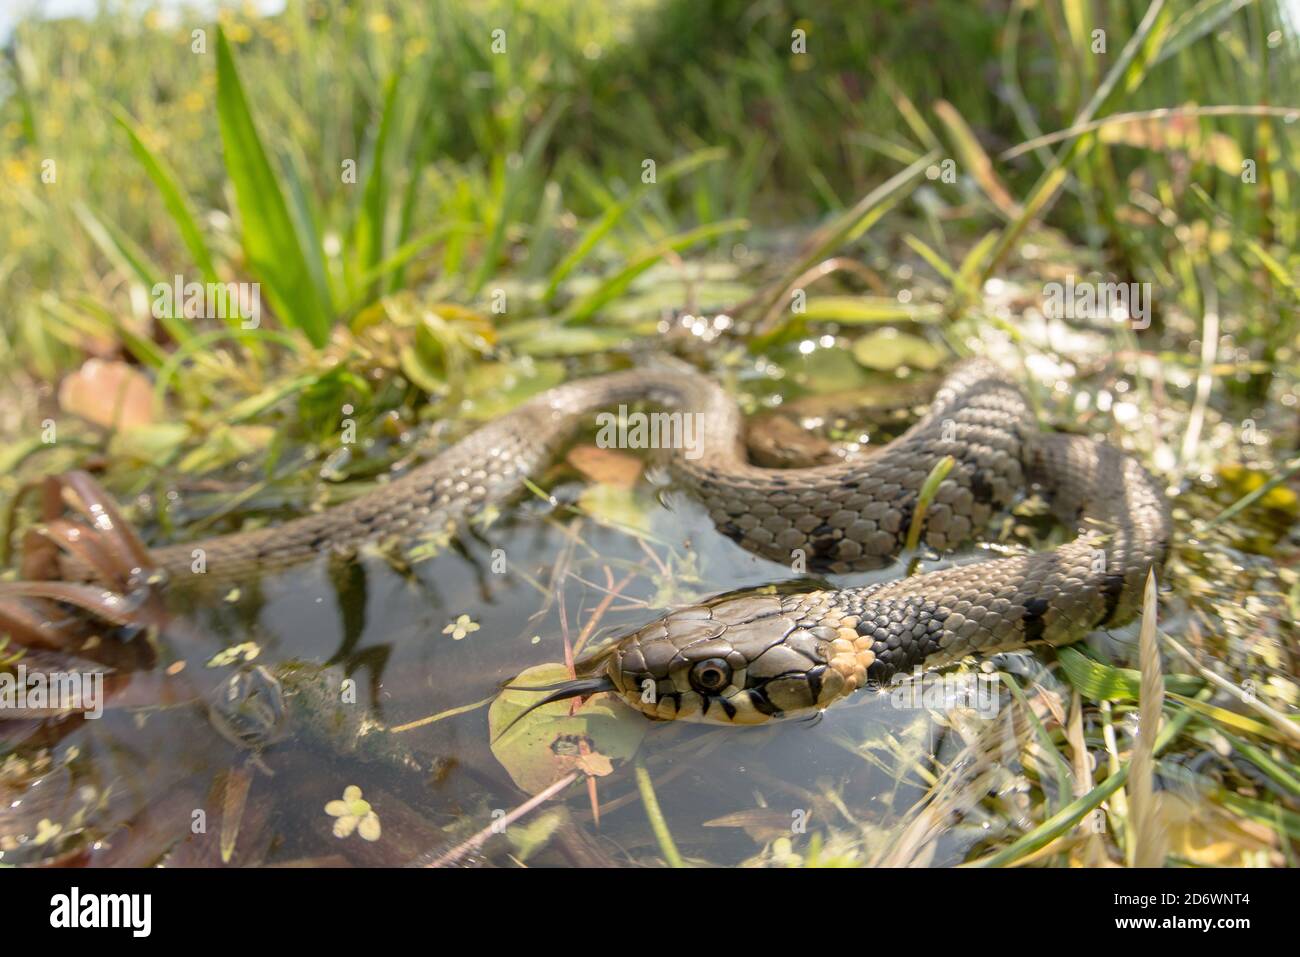 Grass snake in garden pond, UK. Stock Photo